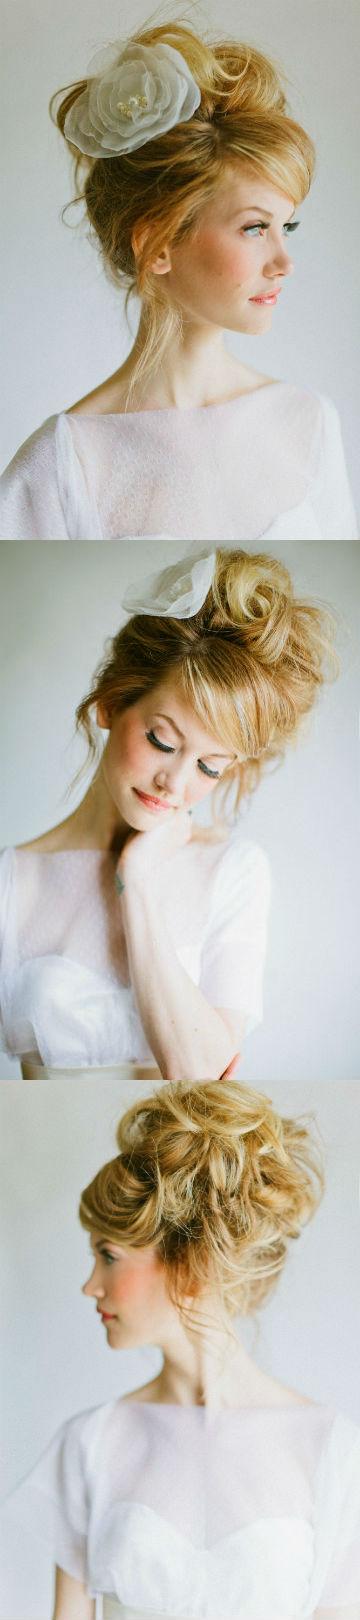 Mariage - Romantique cheveux mariée de style avec grande rose accesorizes